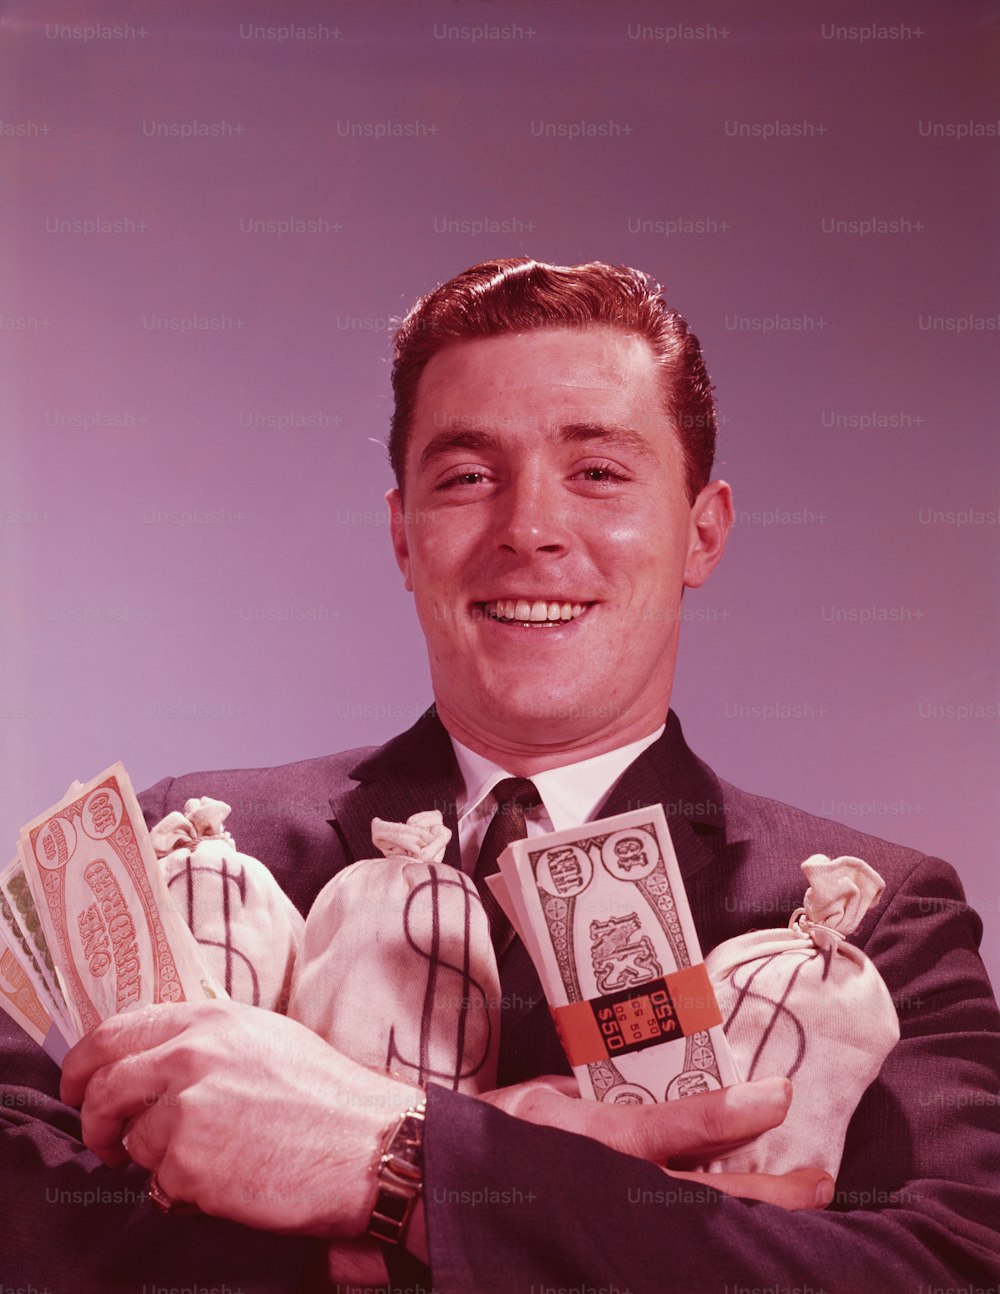 アメリカ合衆国 - 1960年代頃:笑顔の肖像画で、お金の束や袋を持っている男。